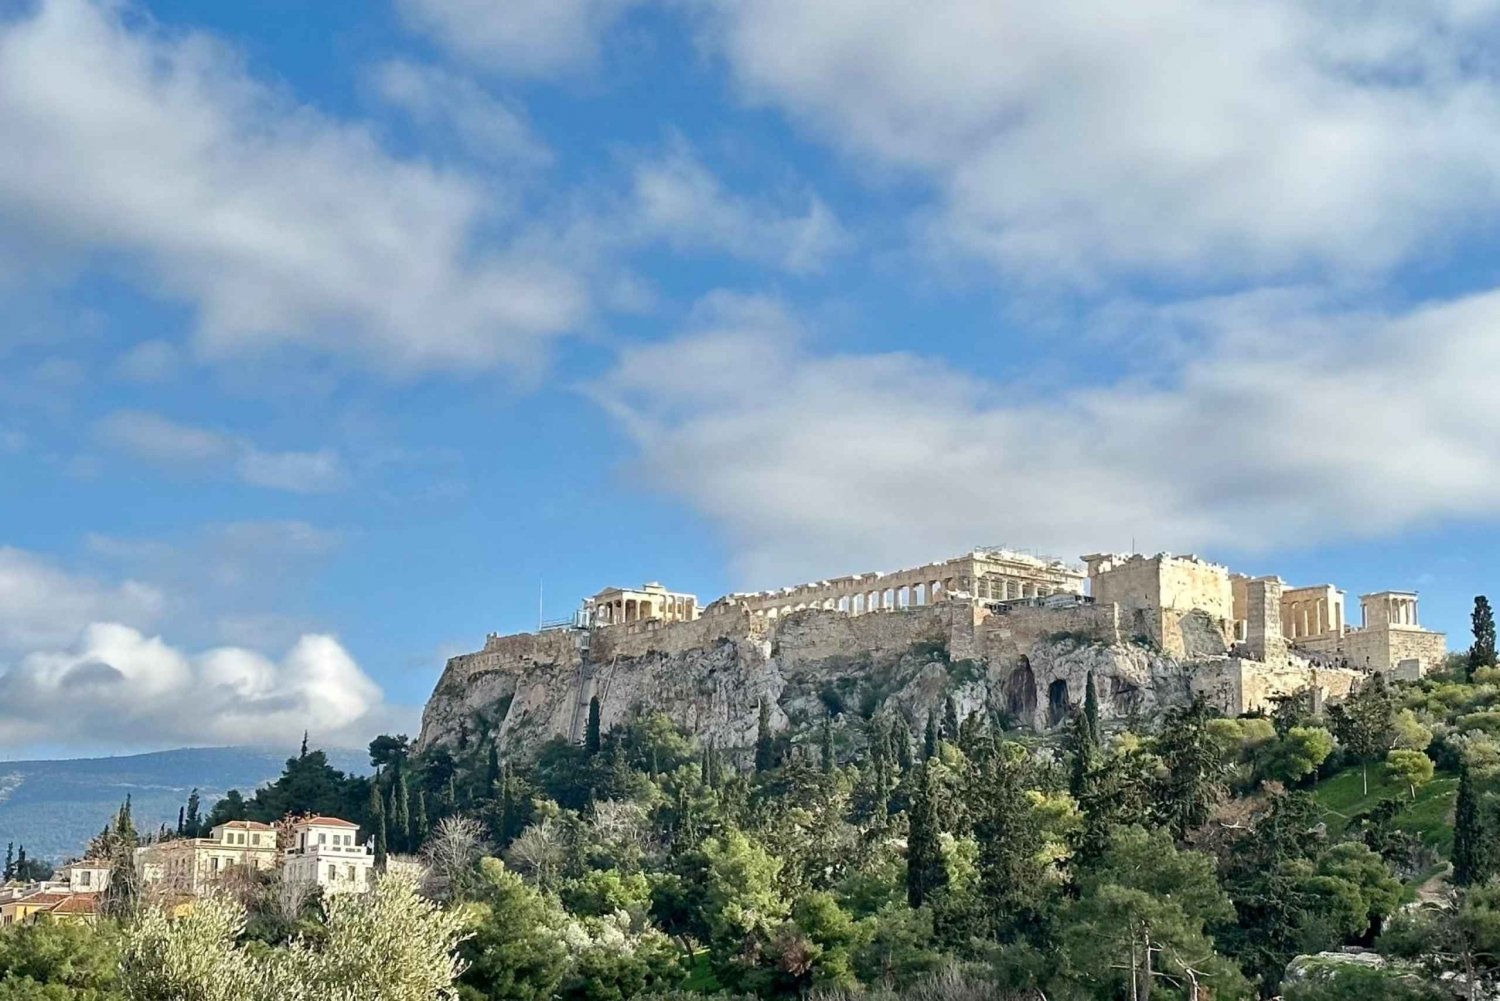 Demi-journée de visite privée des hauts lieux d'Athènes 5 heures